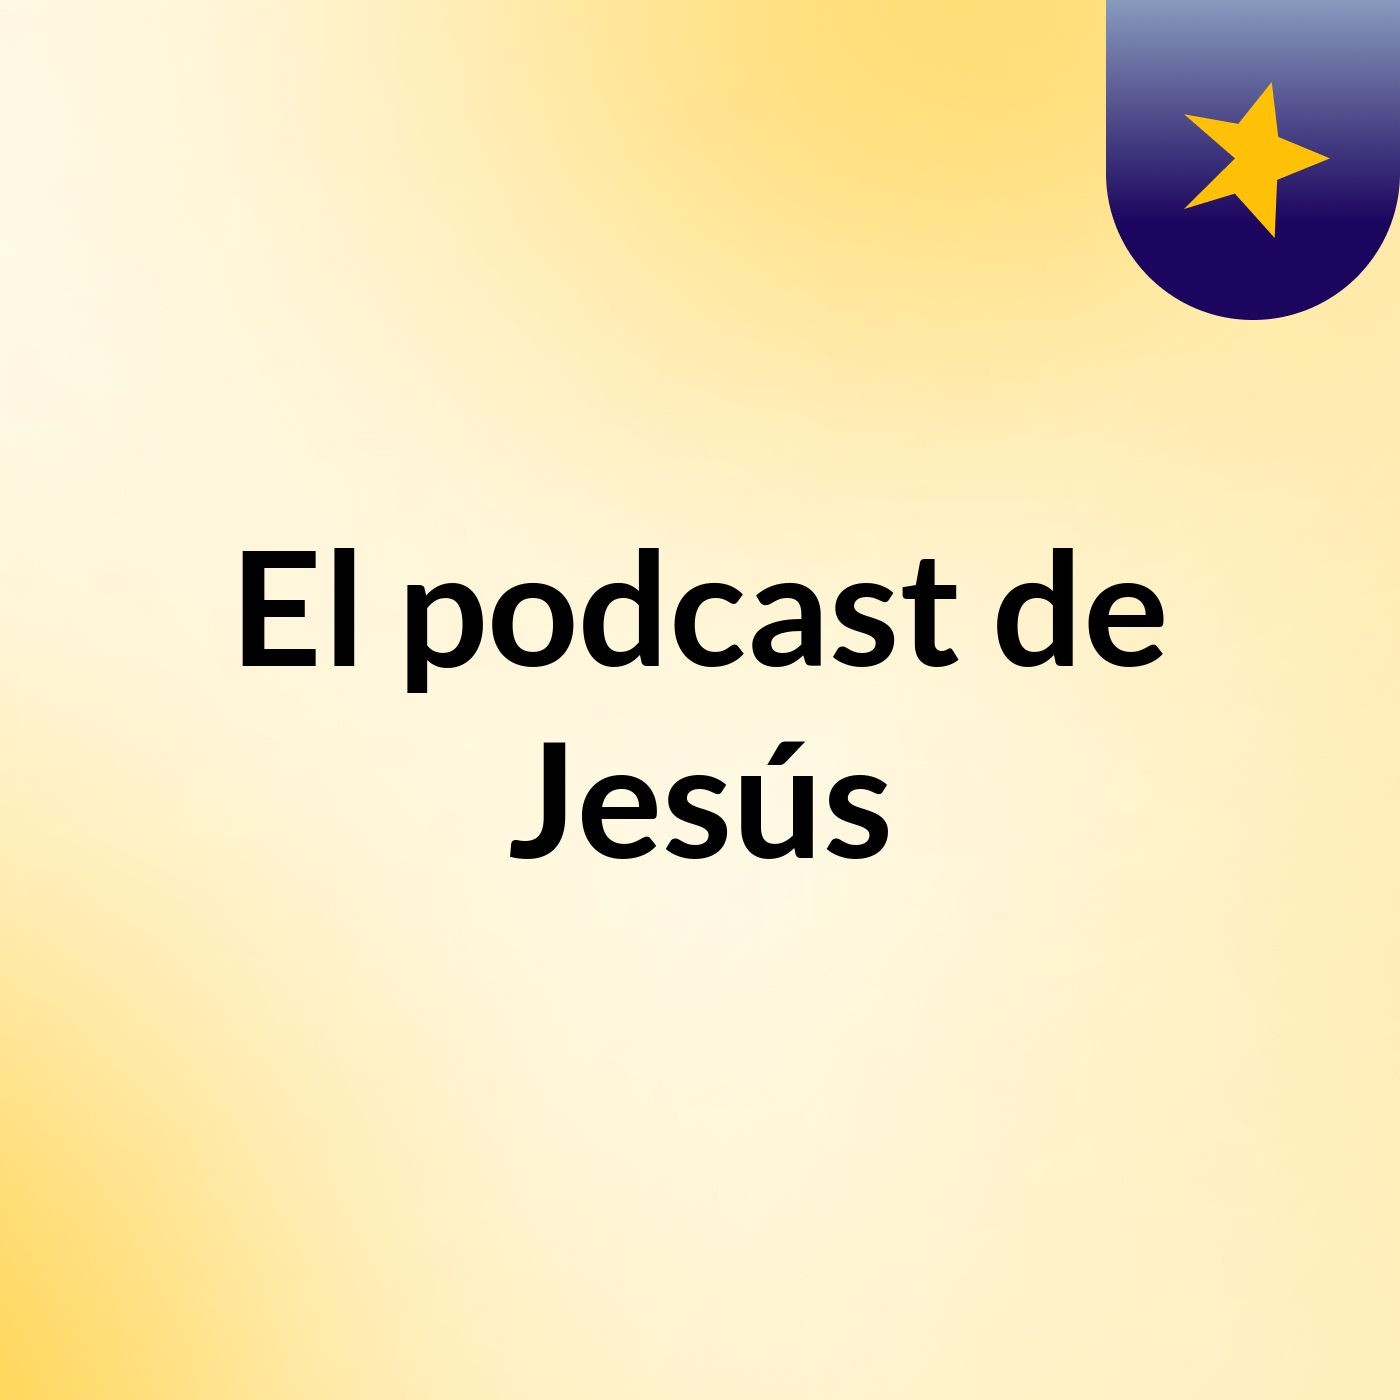 Episodio 7 - El podcast de Jesús